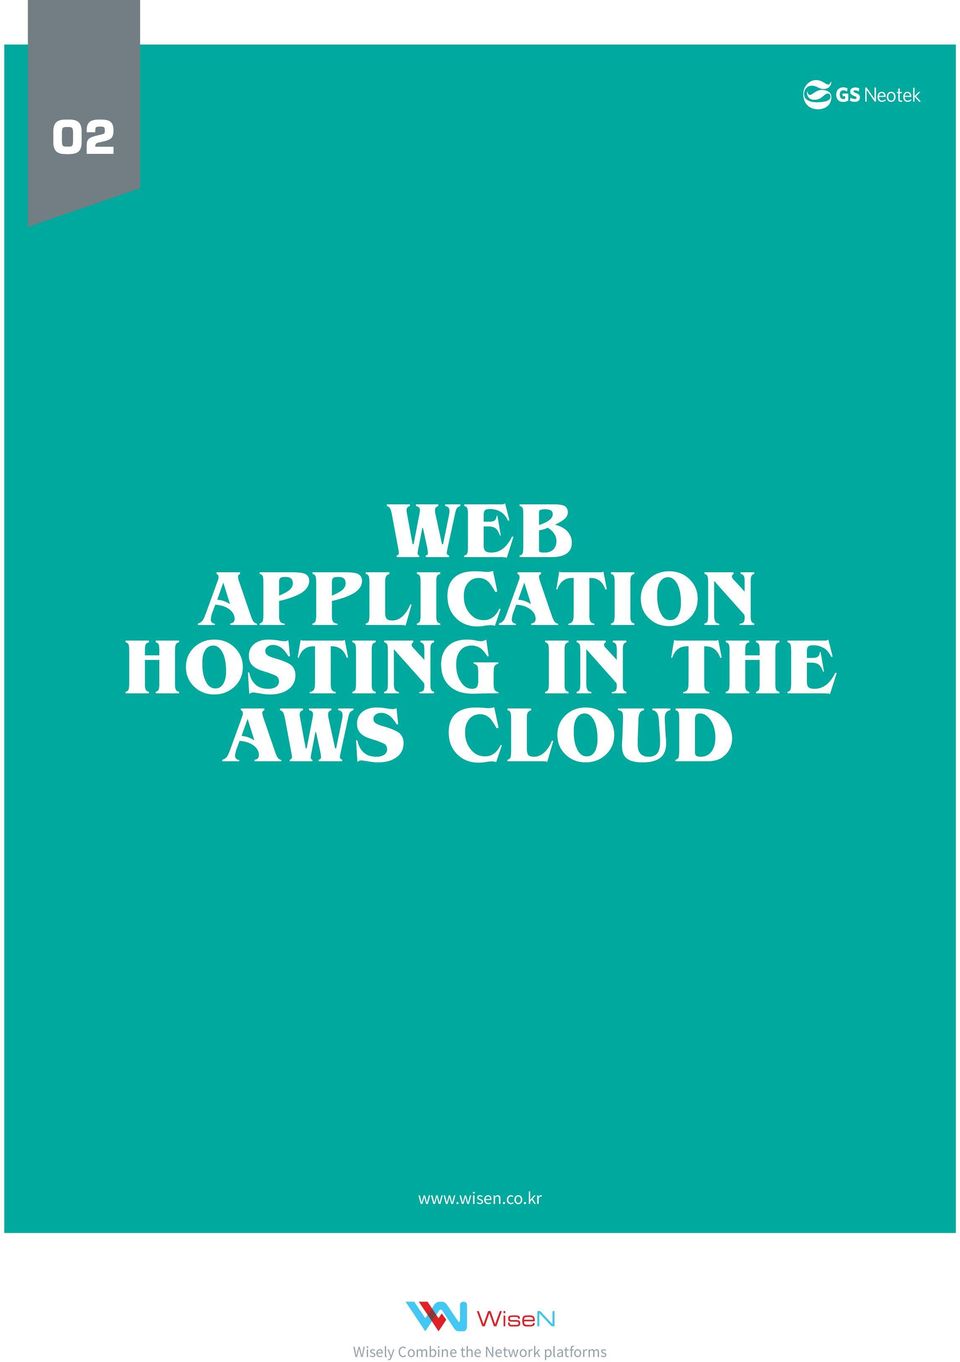 Cloud www.wisen.co.